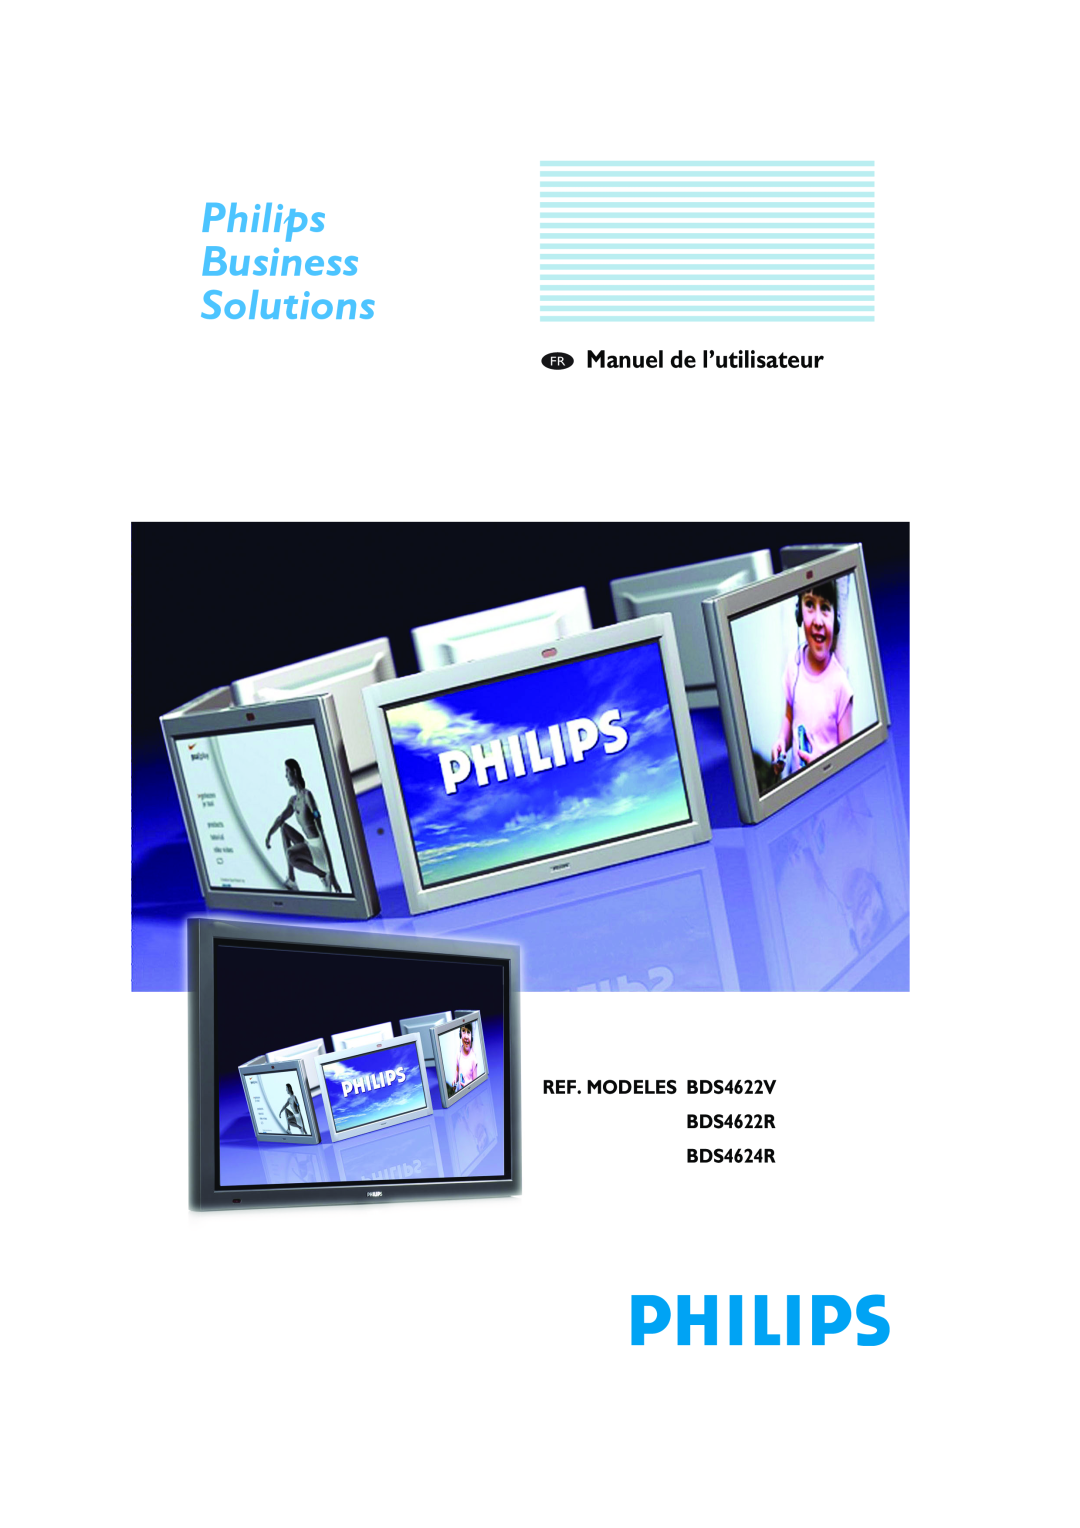 Philips manual REF. MODELES BDS4622V BDS4622R BDS4624R, Philips Business Solutions, FR Manuel de l’utilisateur 